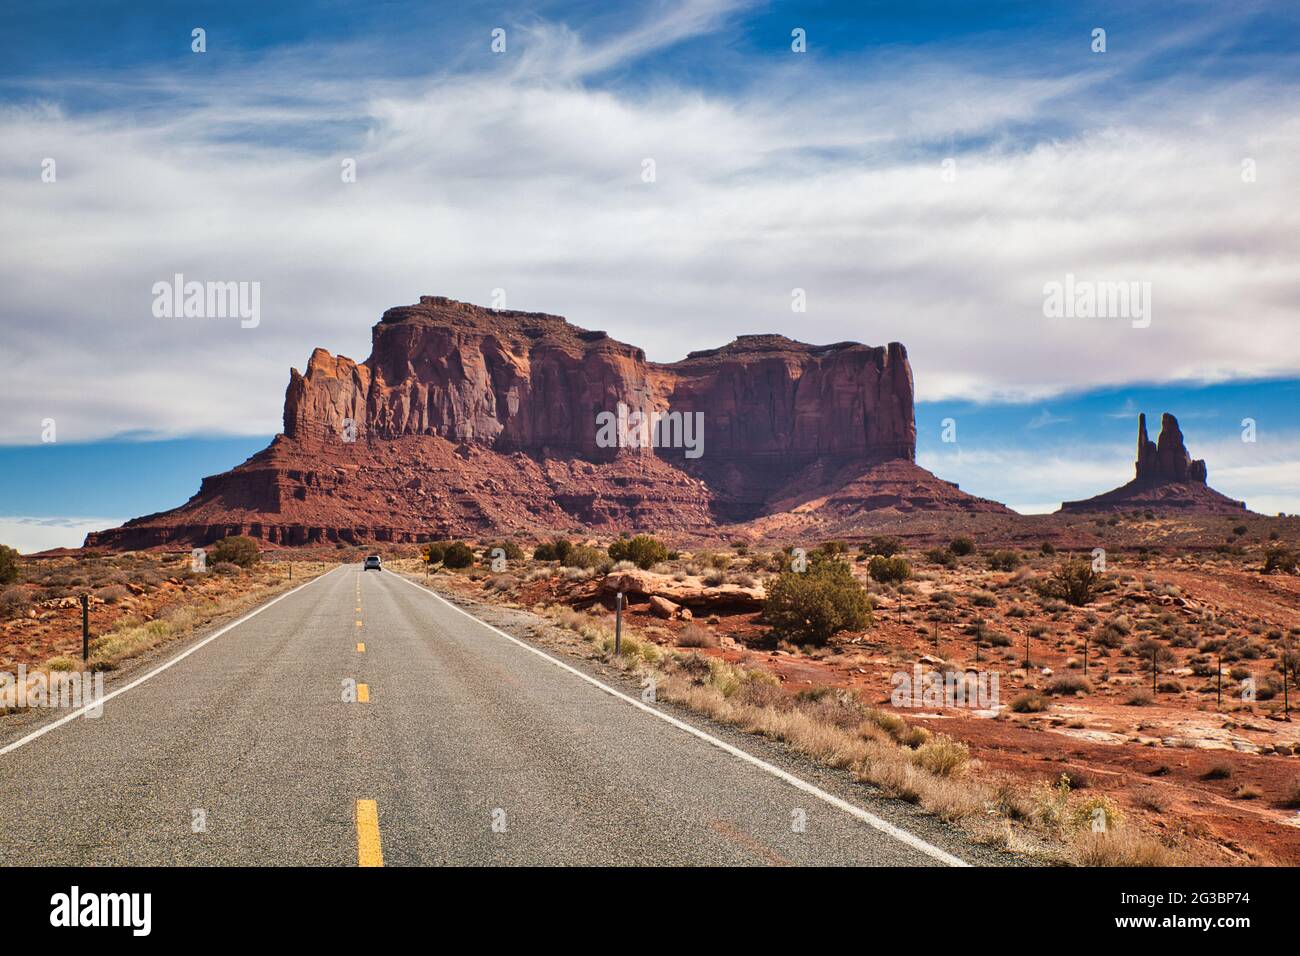 Un lungo tratto di strada principale con auto in lontananza e una vista spettacolare di una tipica roccia a picco con scogliere a strapiombo, in Monument Valley, Arizona, Stati Uniti Foto Stock